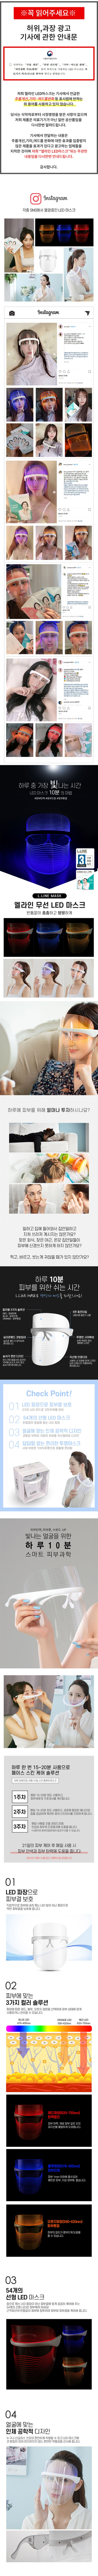 엘라인 LED 마스크+리아진 이영애 마스크팩 12매 세트